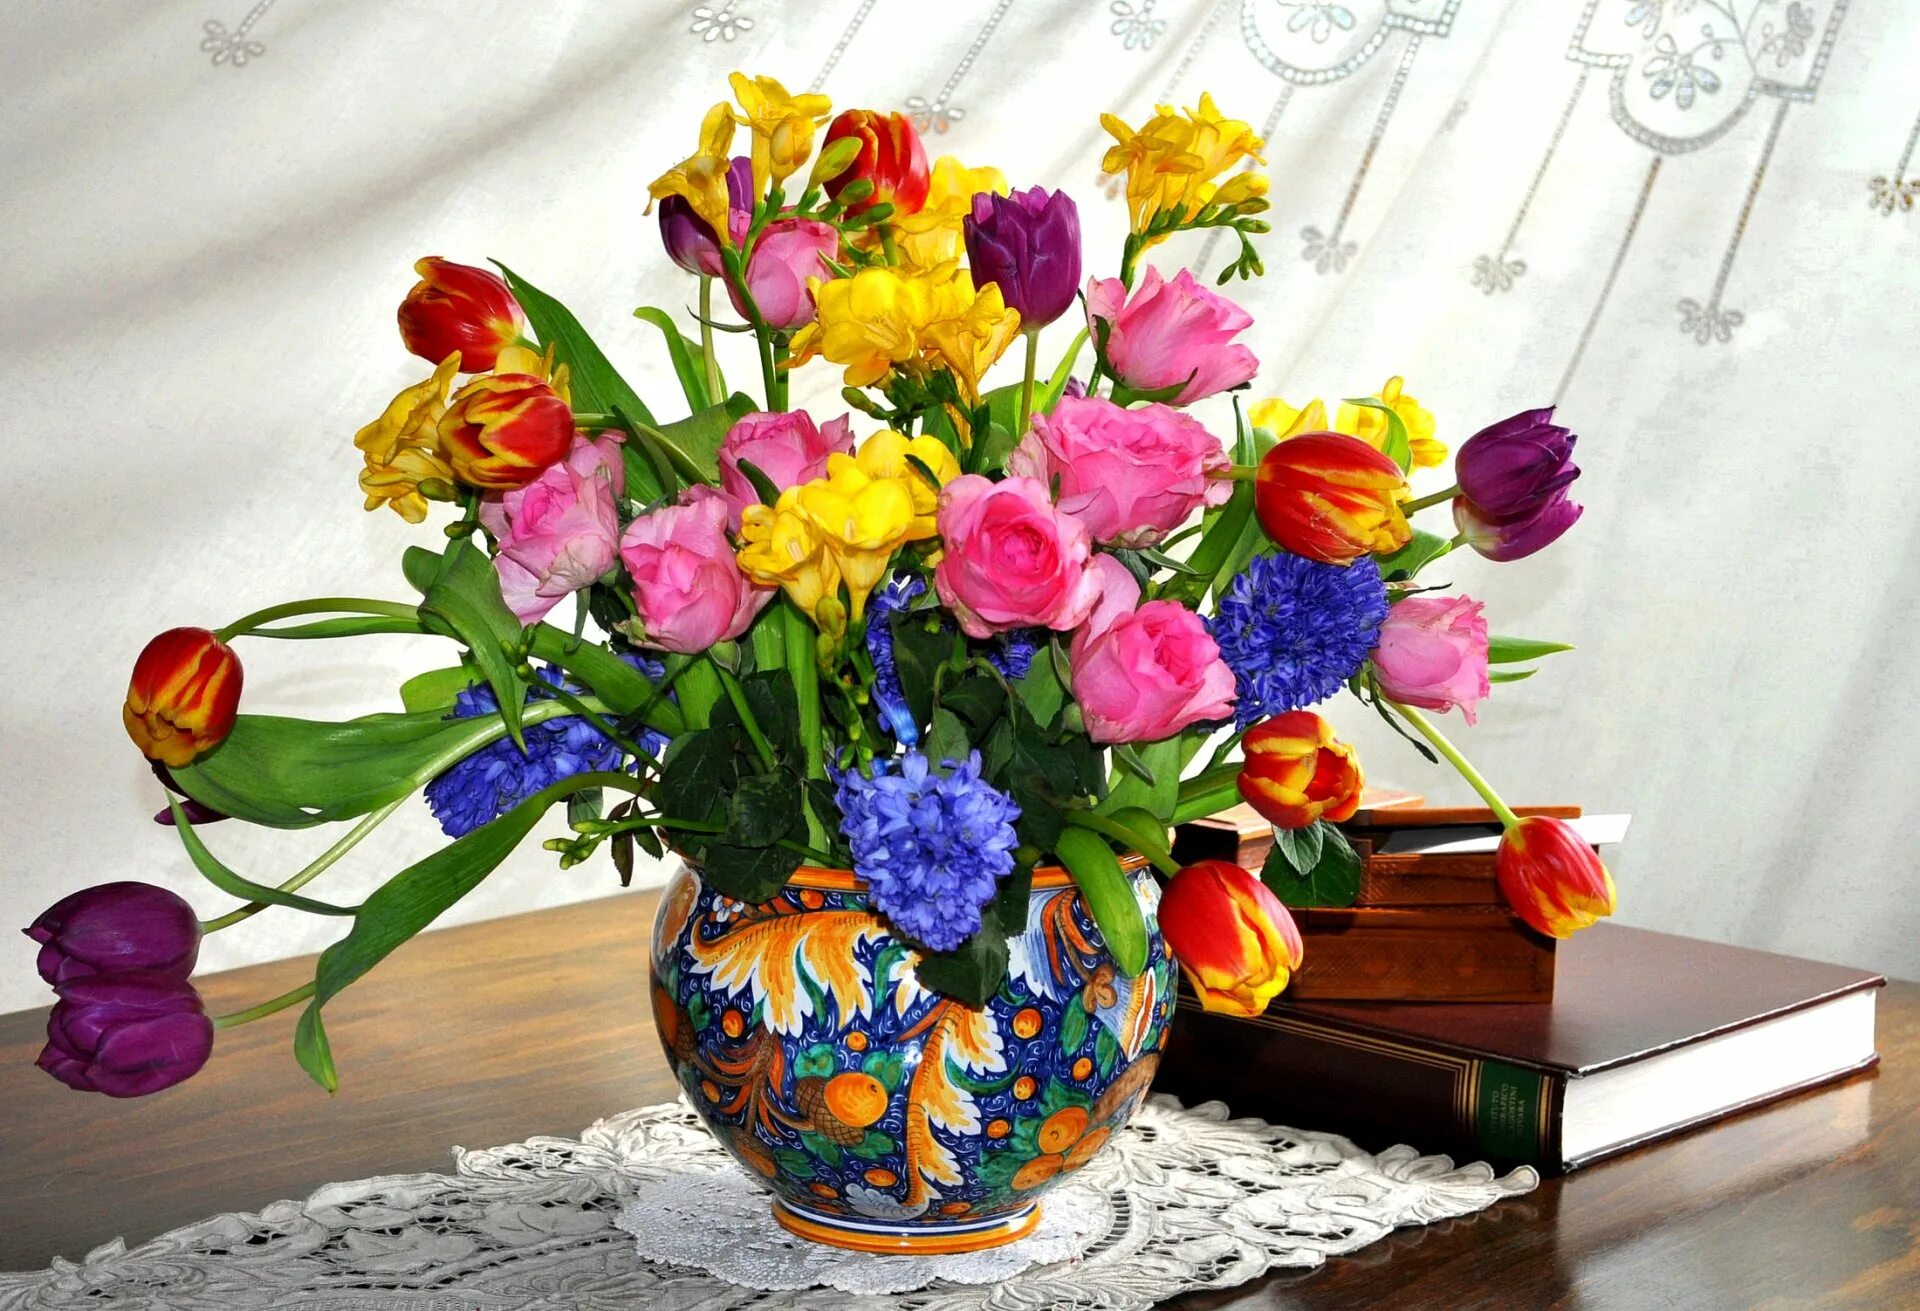 Фрезия тюльпаны гиацинты. Весенние цветы v vaze. Весенний букет с гиацинтами и тюльпанами. Большой весенний букет